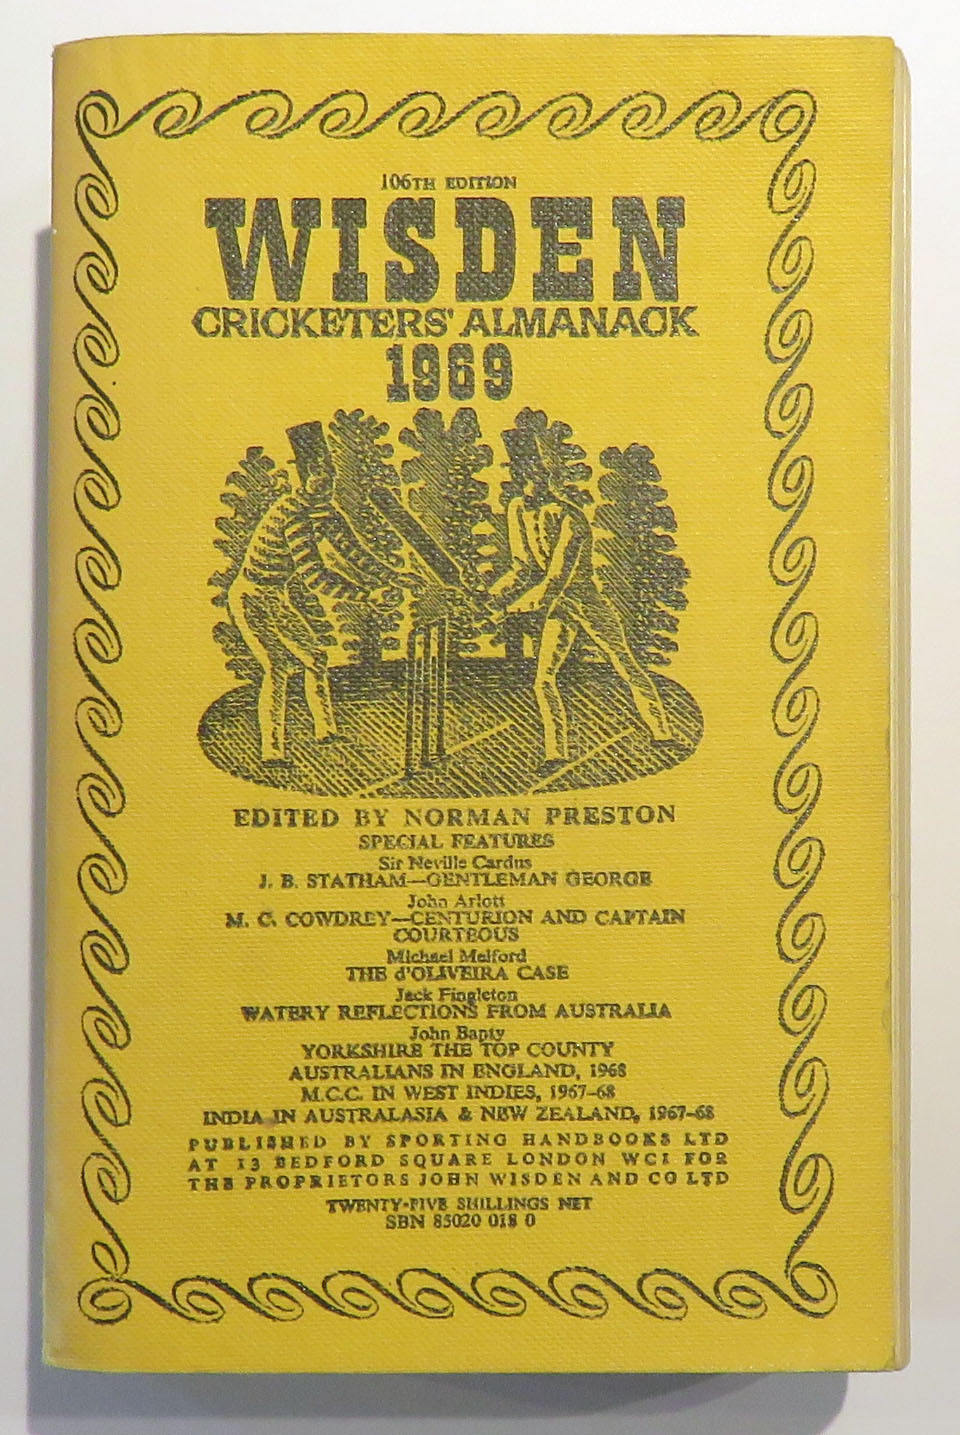 Wisden Cricketers' Almanack 1969